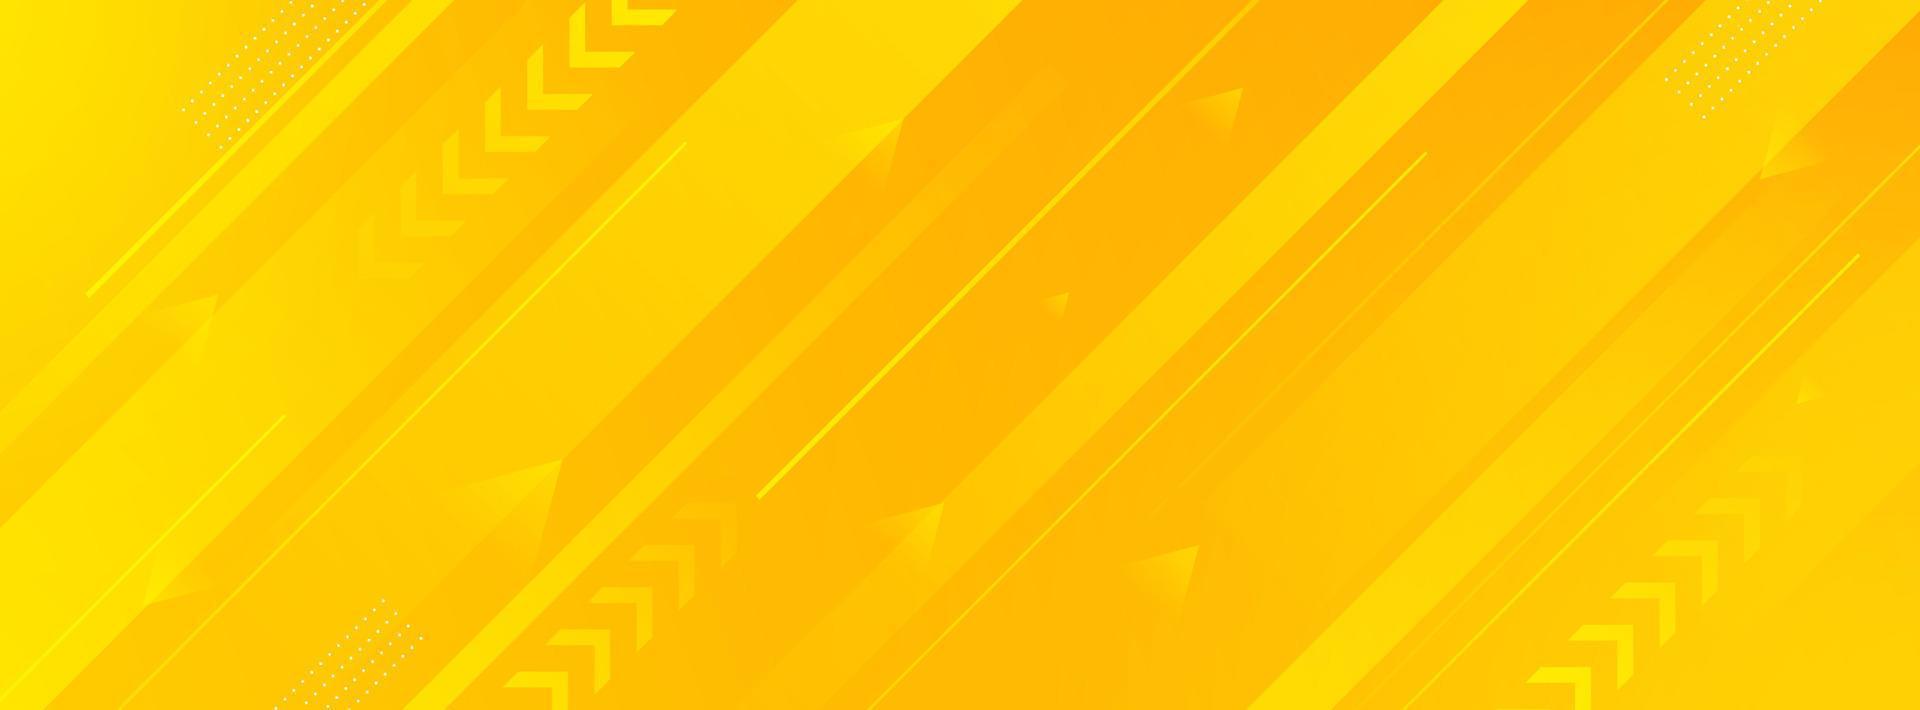 modern banier achtergrond. kleurrijk, geel en oranje gradatie, schuine strepen, Memphis stijl, eps 10 vector